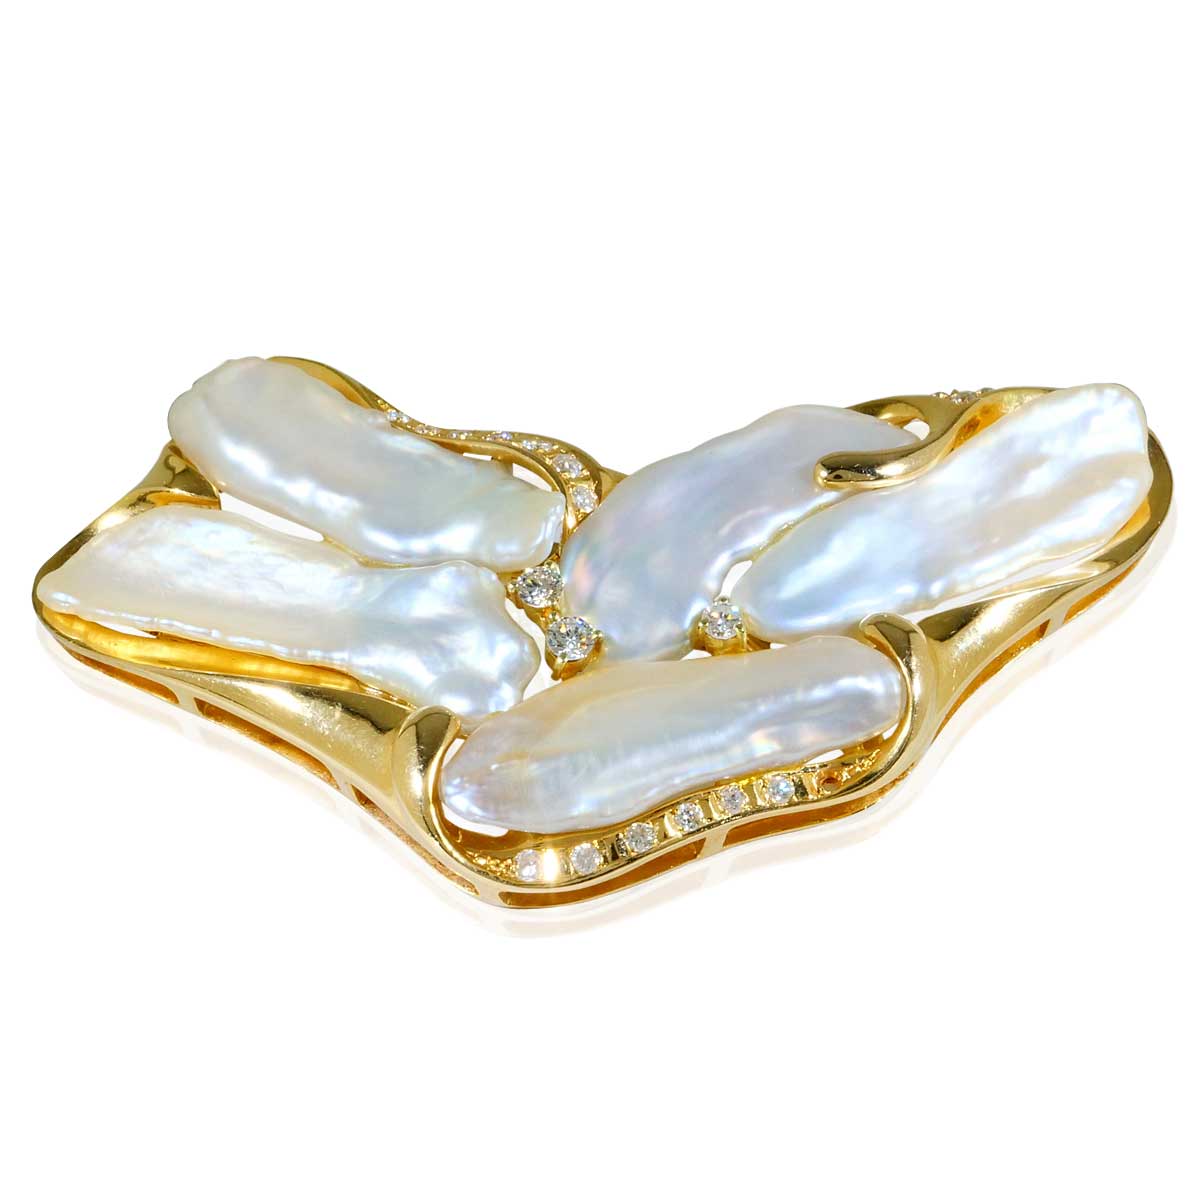 Biwaperlen Garnitur bestehend aus 0,64ct Diamanten und barocken Perlen-Kollier, Kettengleiter Ohrclips und Anhänger in 14 kt Ge